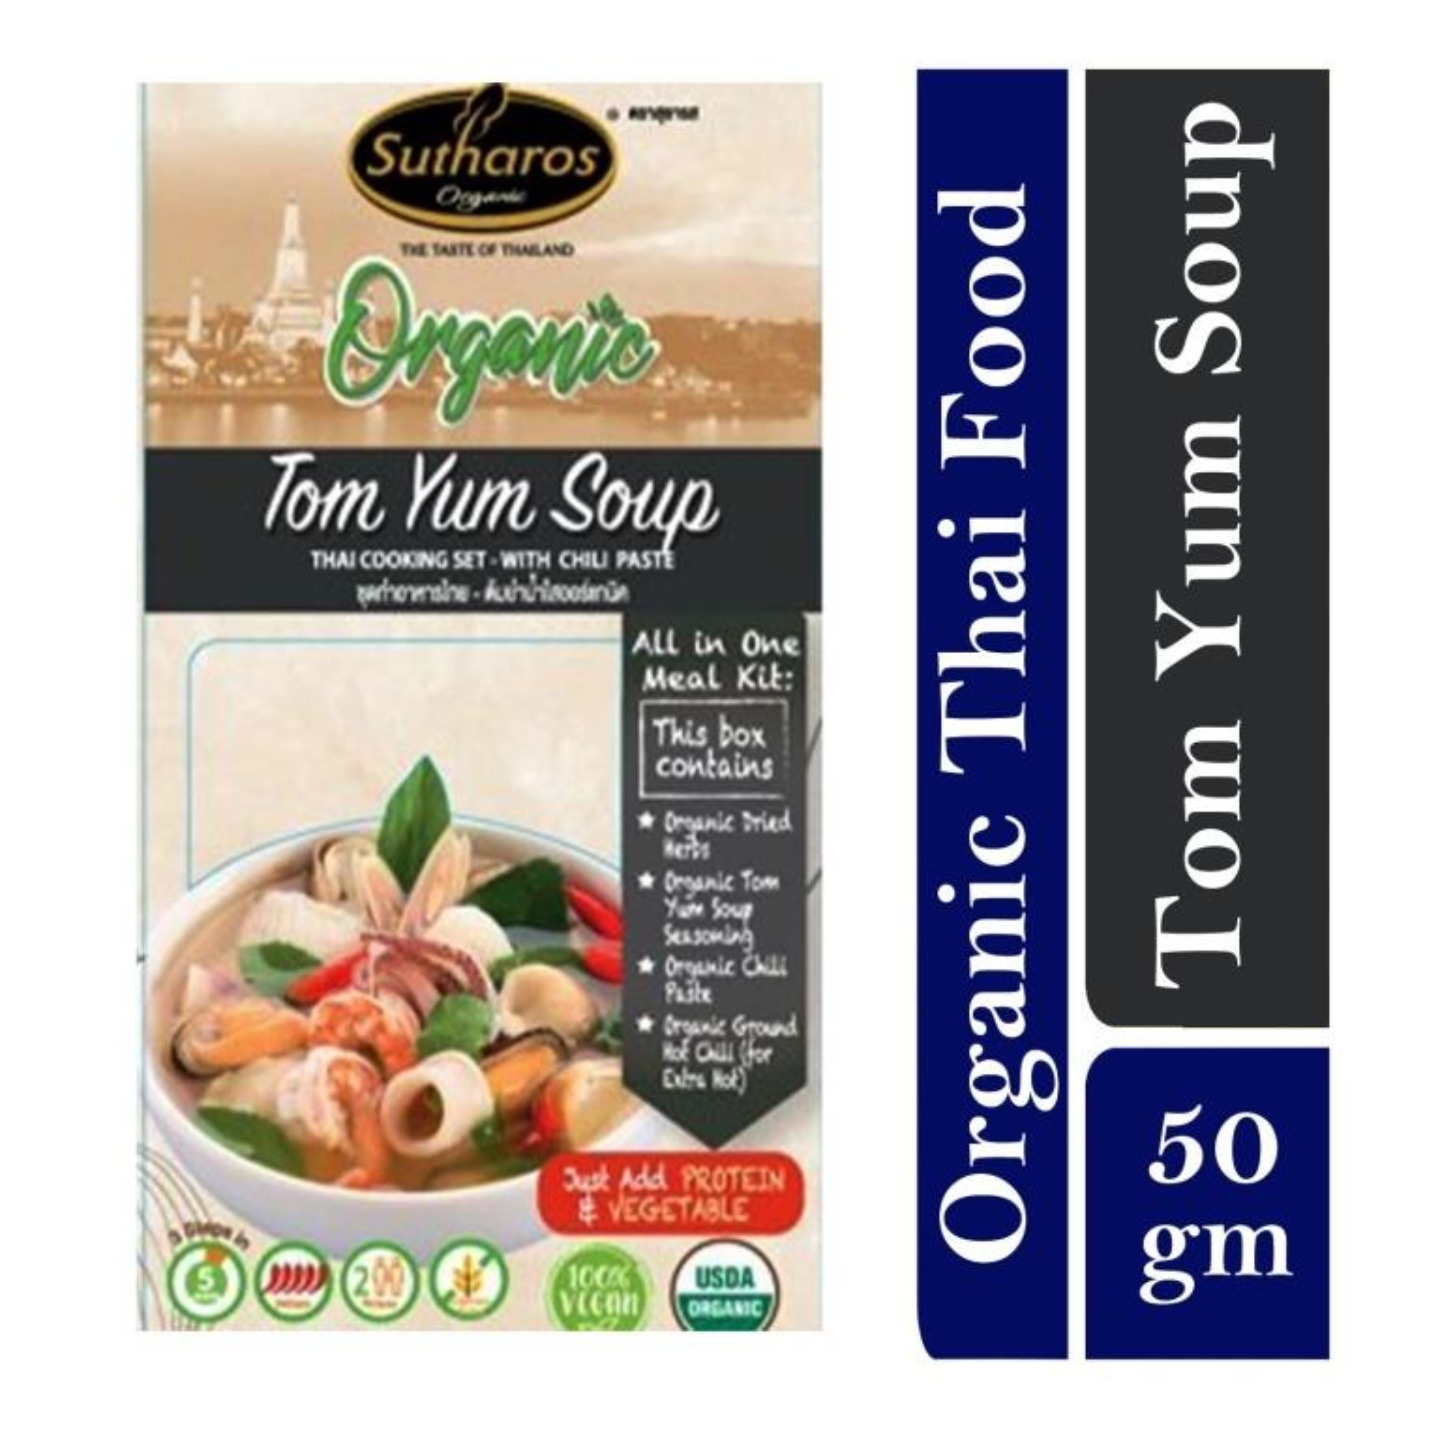 Sutharos Organic Thai Tom Yum Soup 1 x 50gm